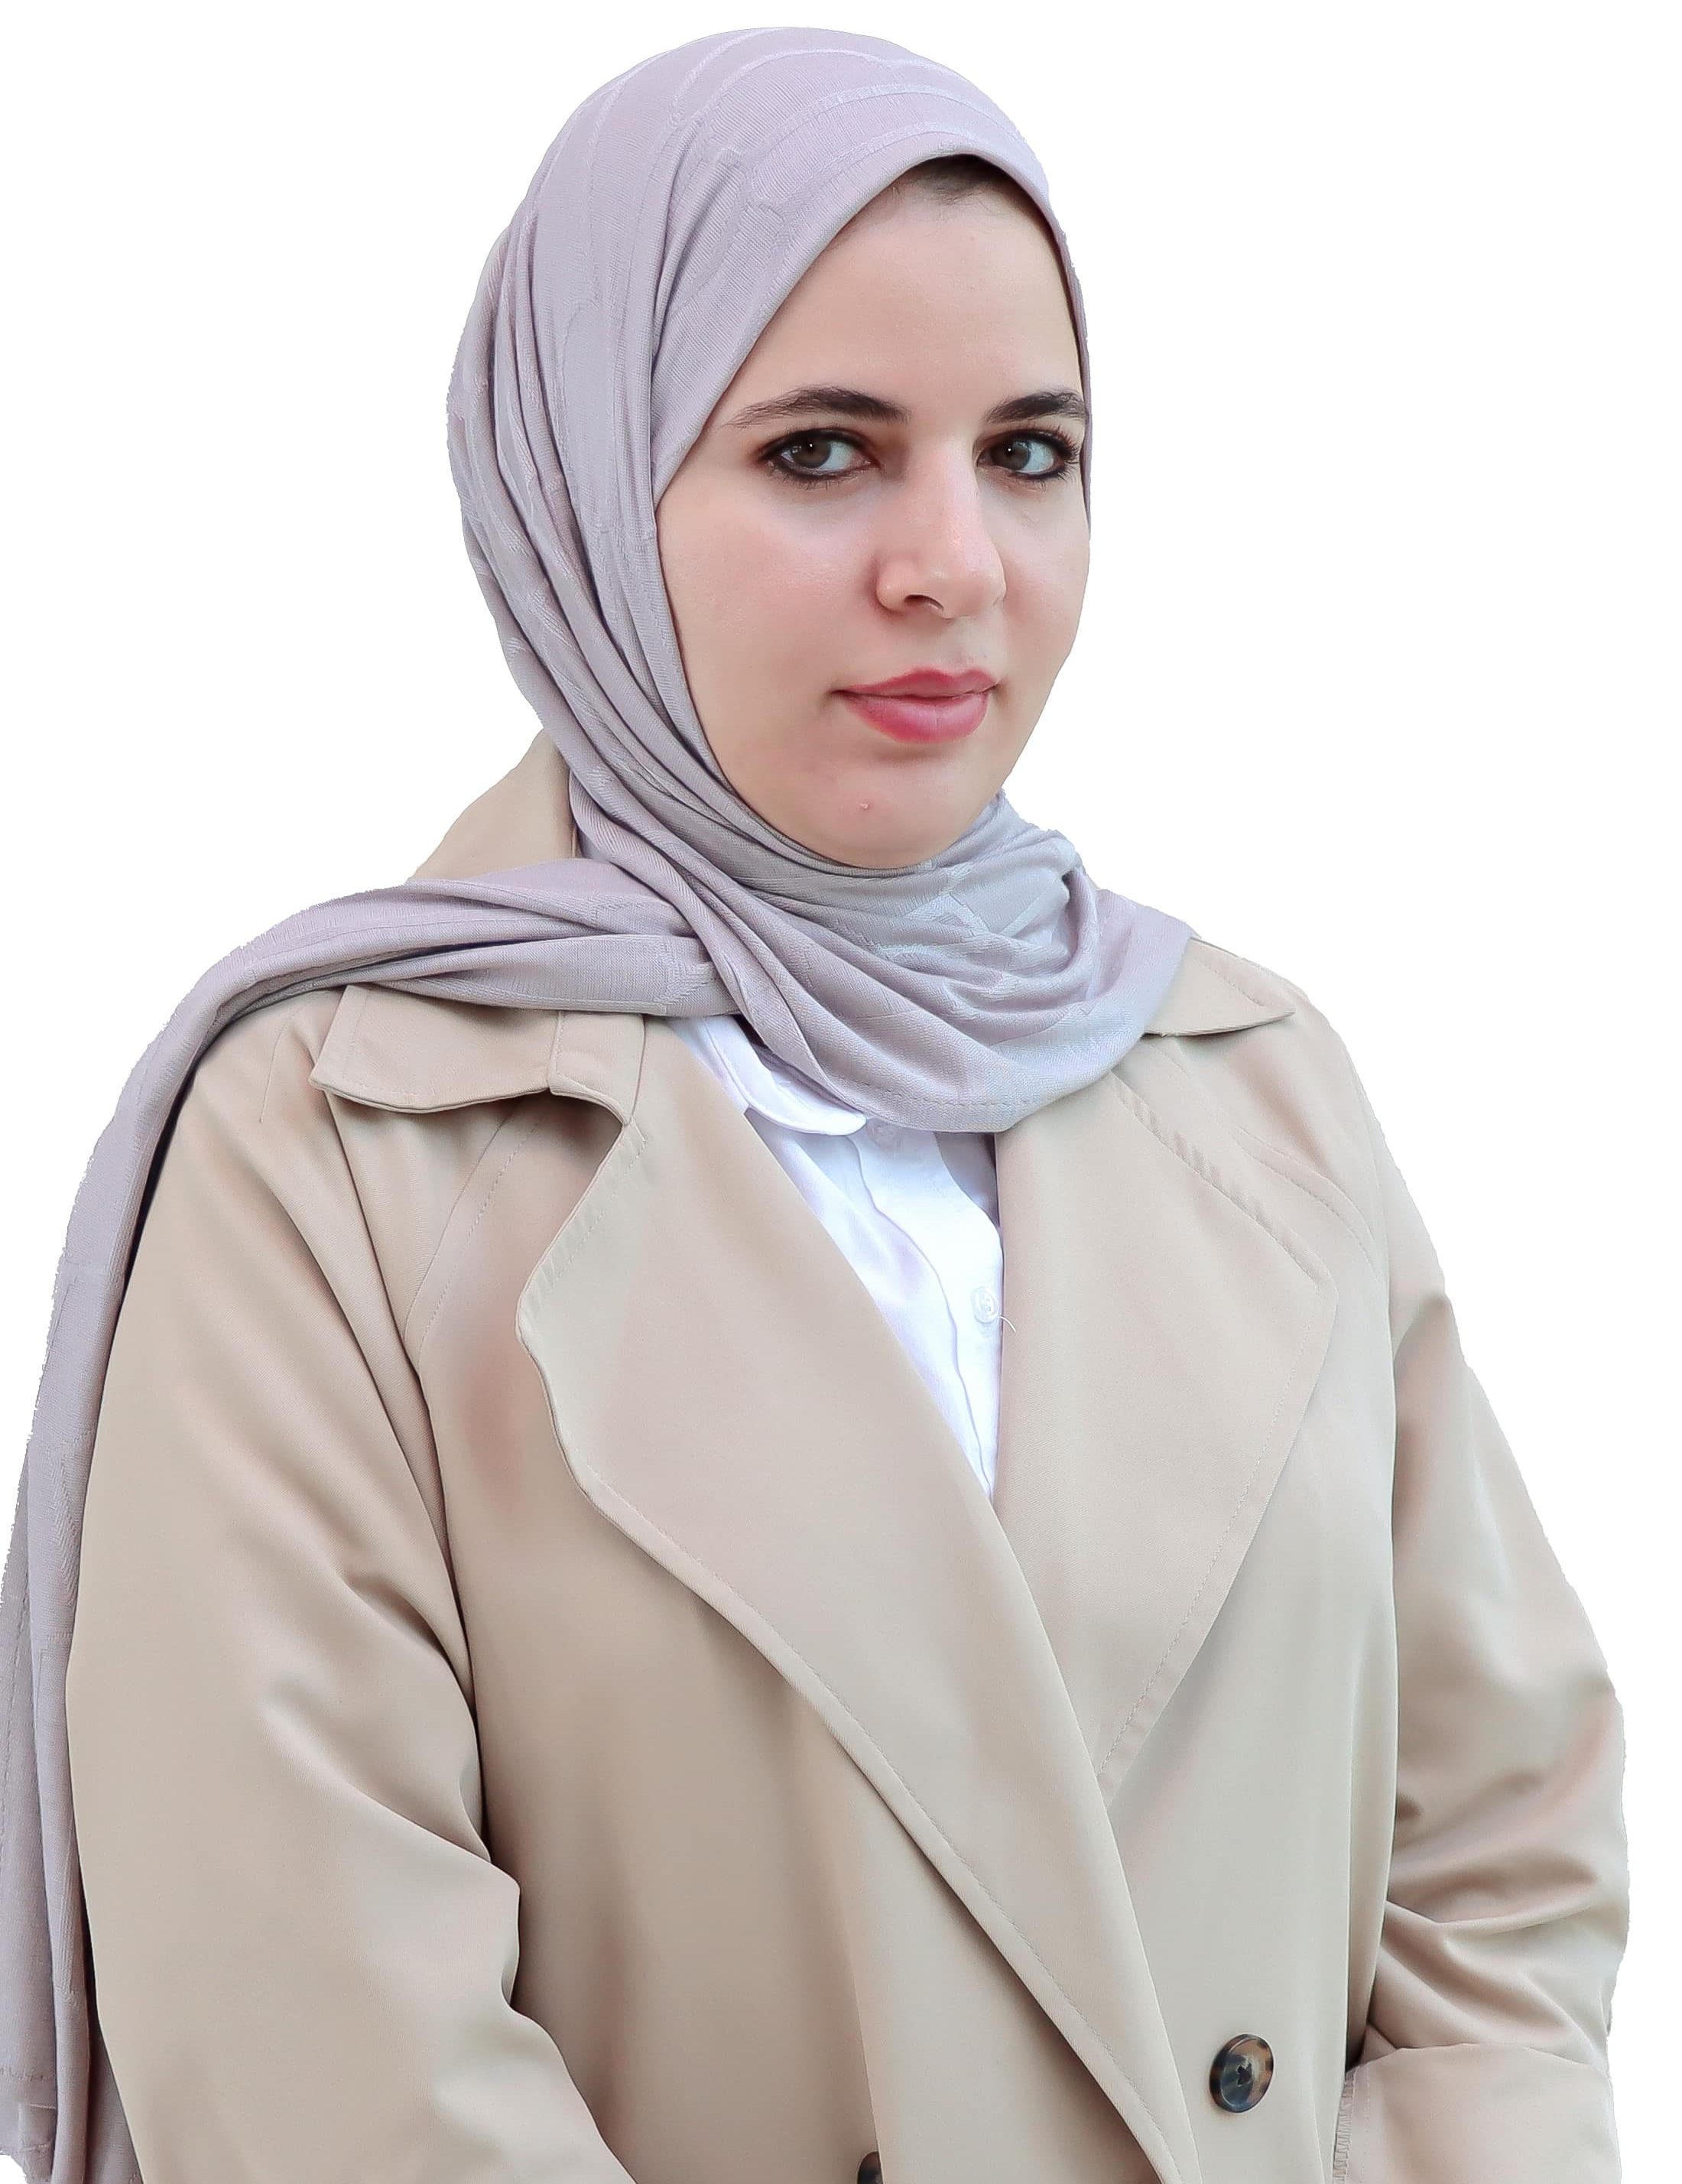 Dr. Asmaa Abdelaziz Mohamed Abobakr